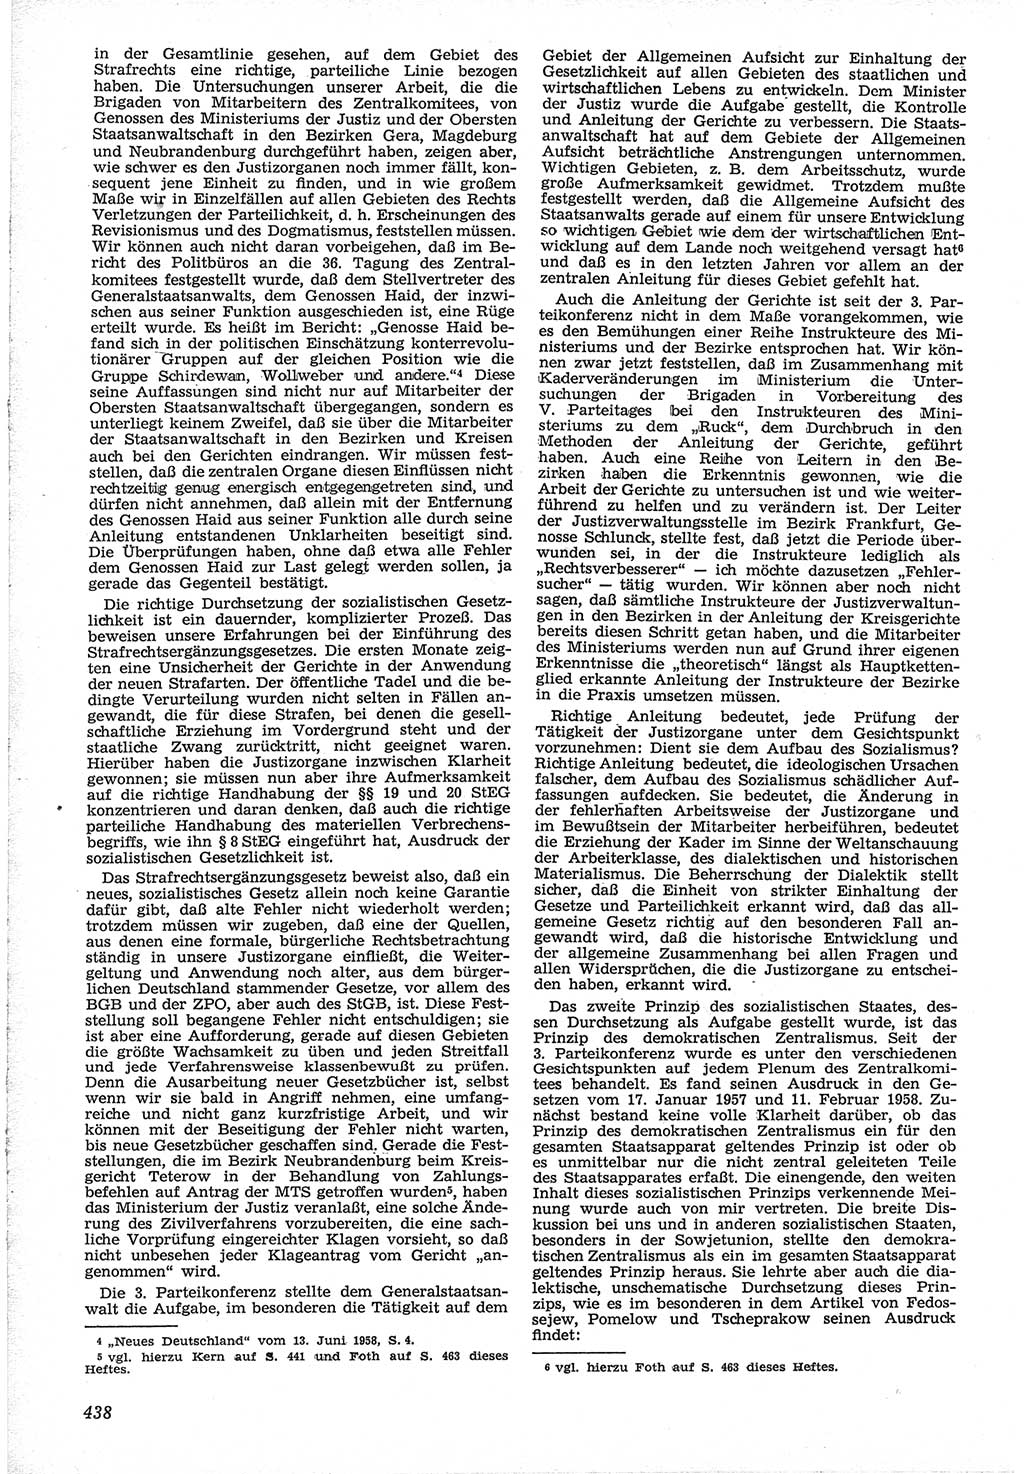 Neue Justiz (NJ), Zeitschrift für Recht und Rechtswissenschaft [Deutsche Demokratische Republik (DDR)], 12. Jahrgang 1958, Seite 438 (NJ DDR 1958, S. 438)